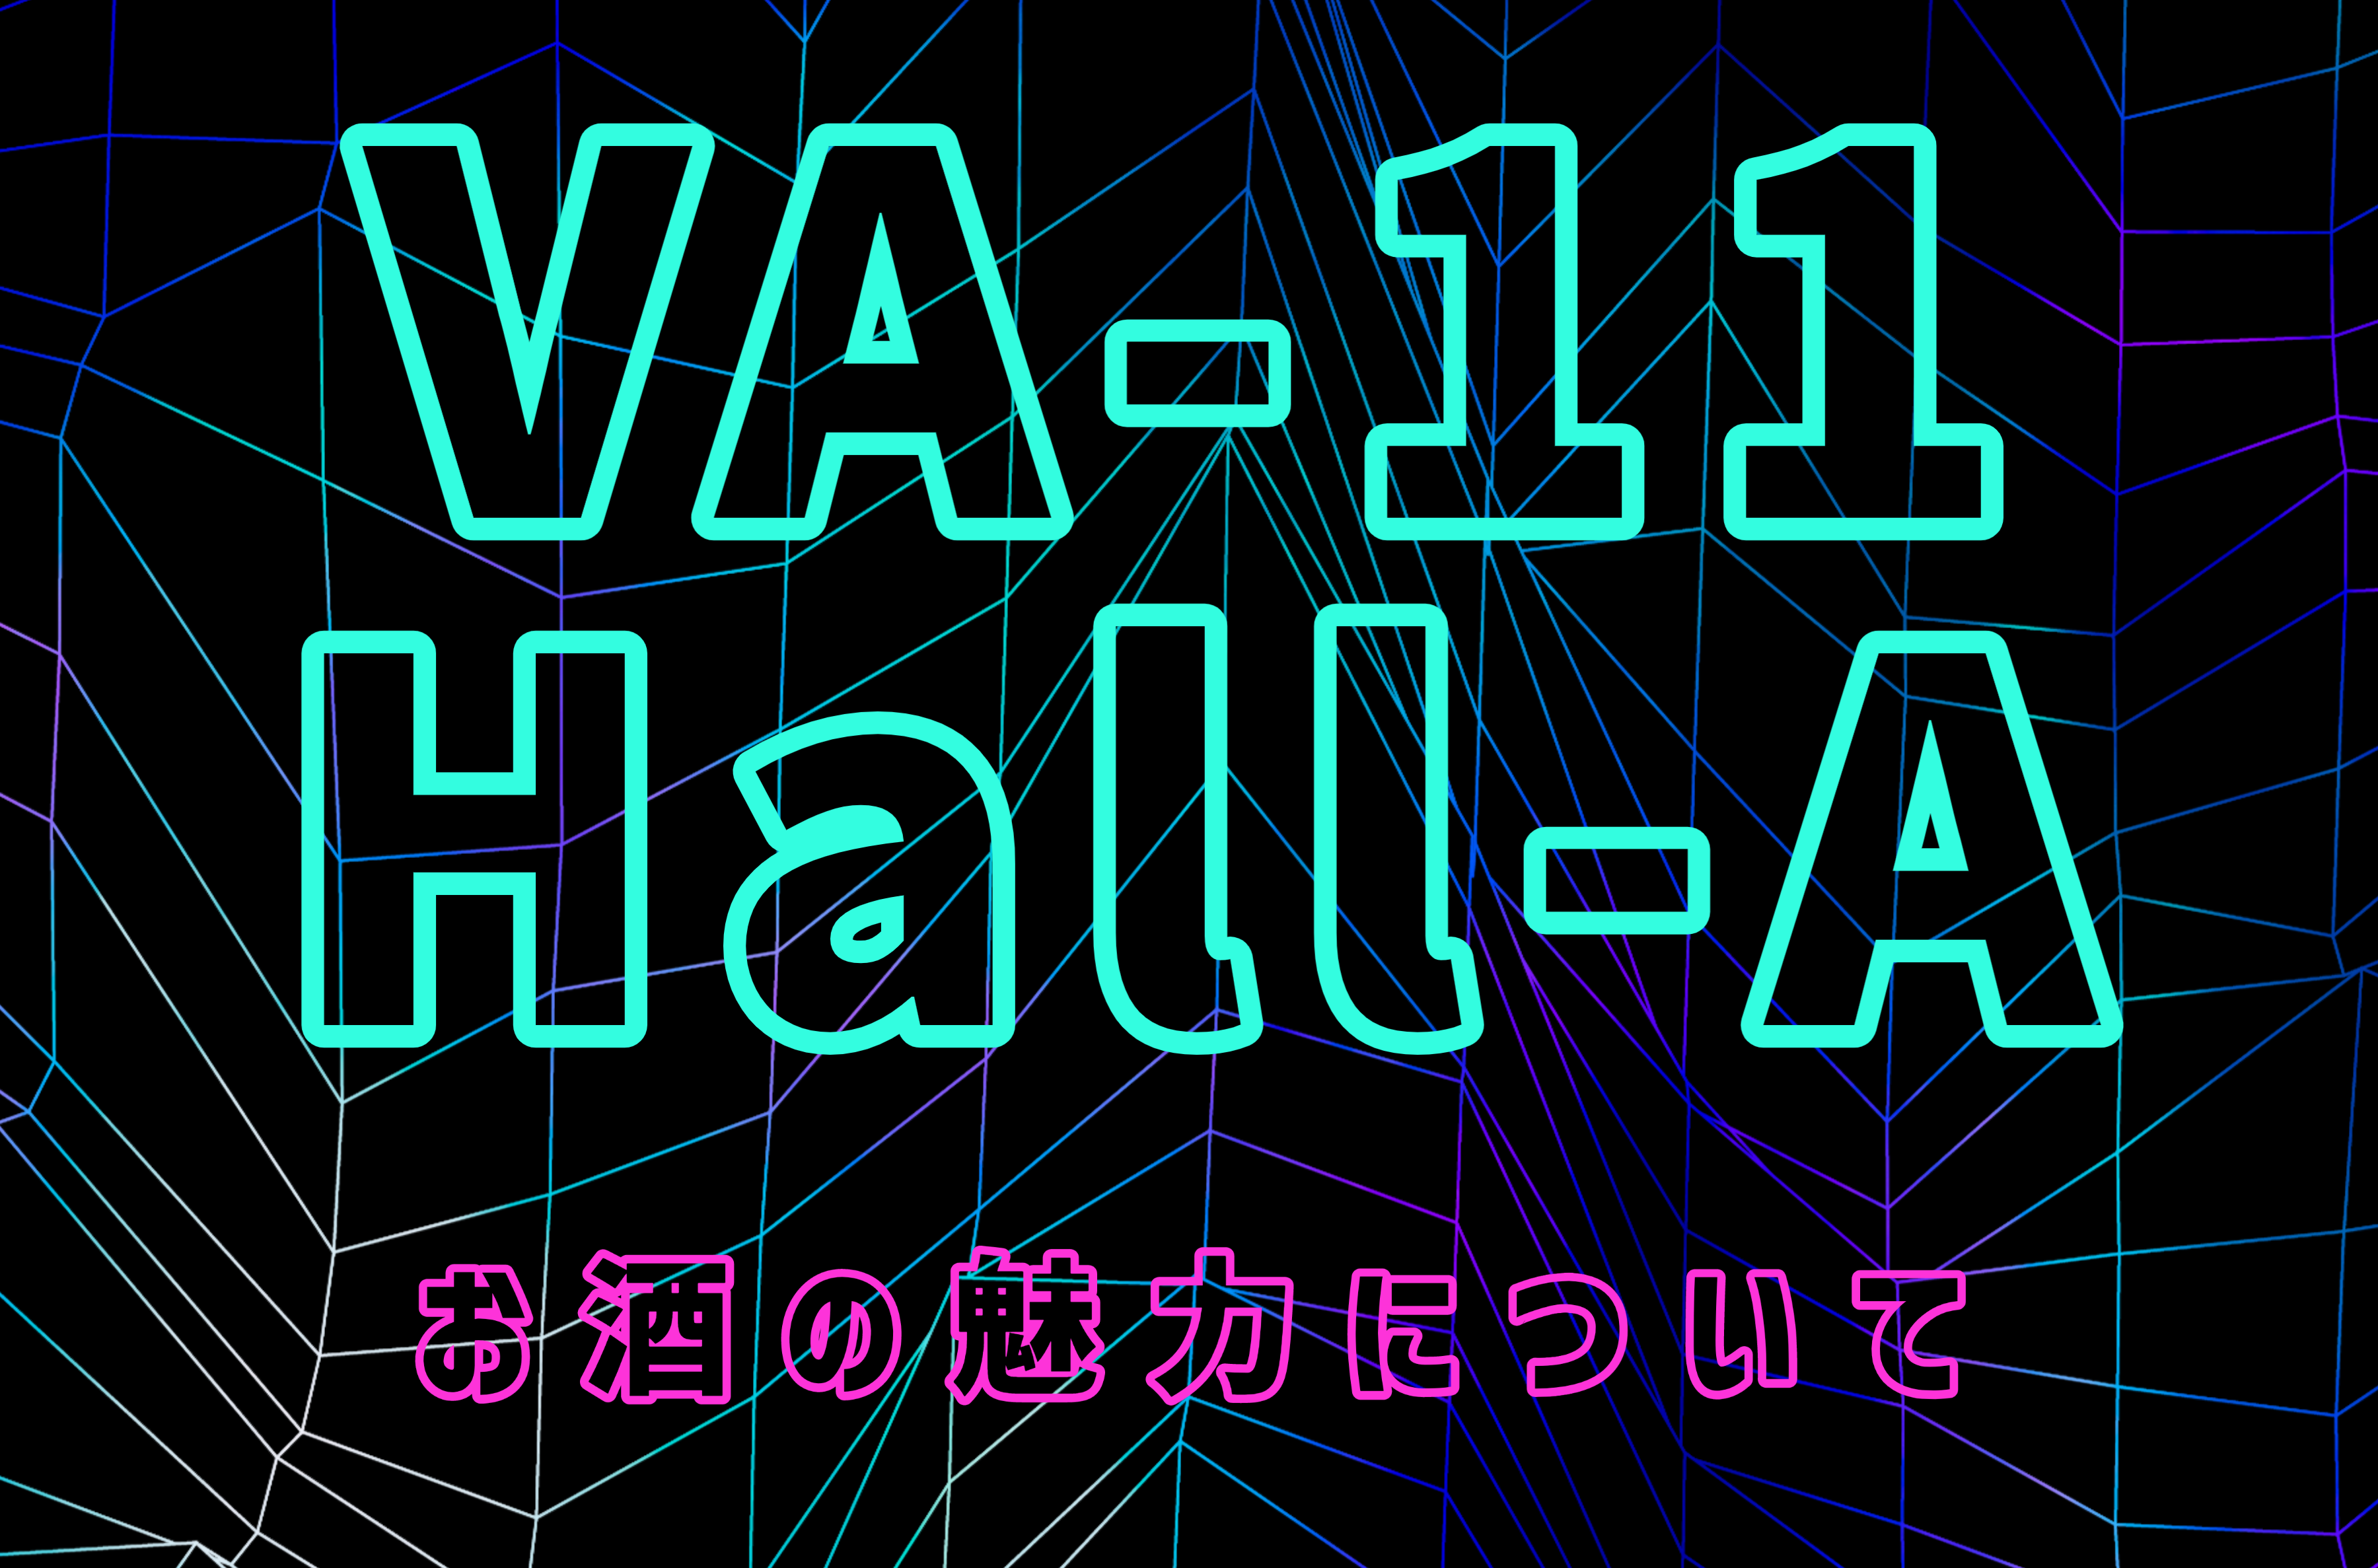 「VA-11 Hall-A」をプレイし始めた時に気づいた、お酒の魅力についての話。